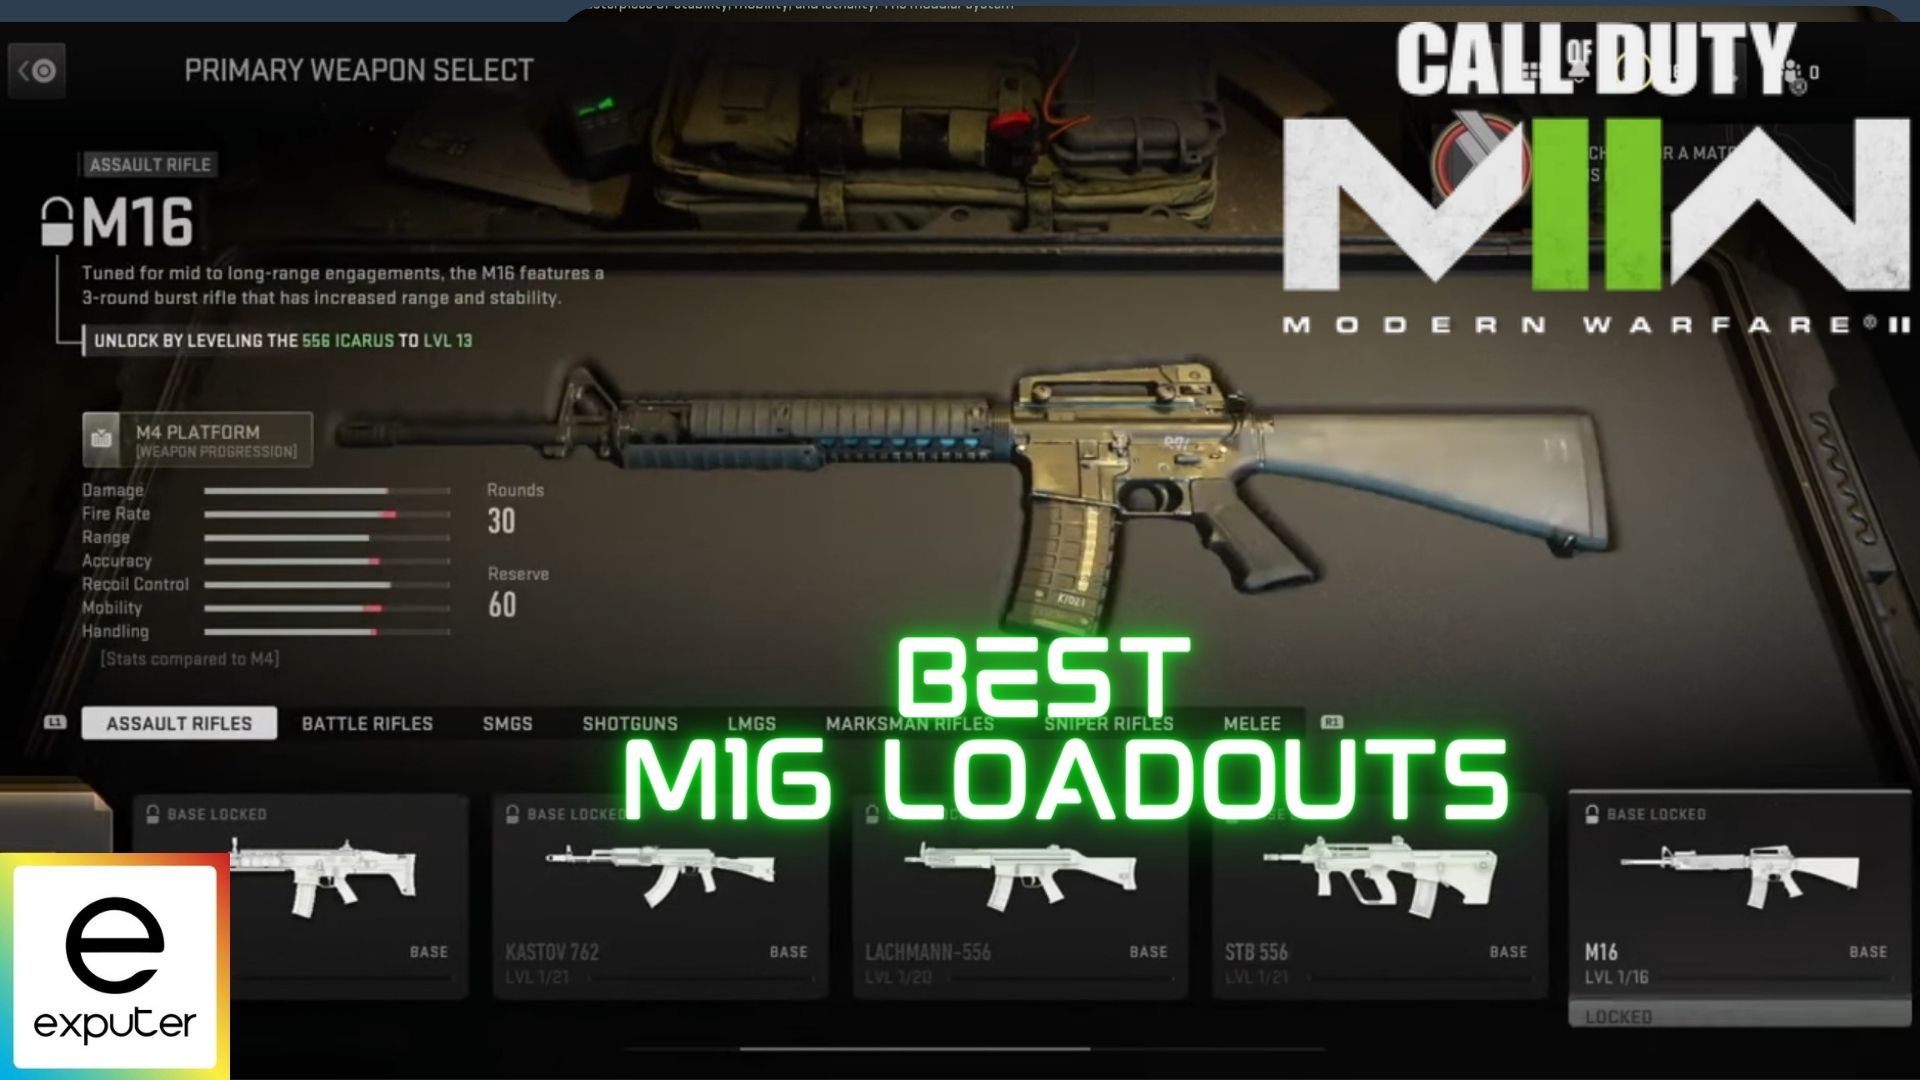 Best M16 Loadouts in COD Modern Warfare 2